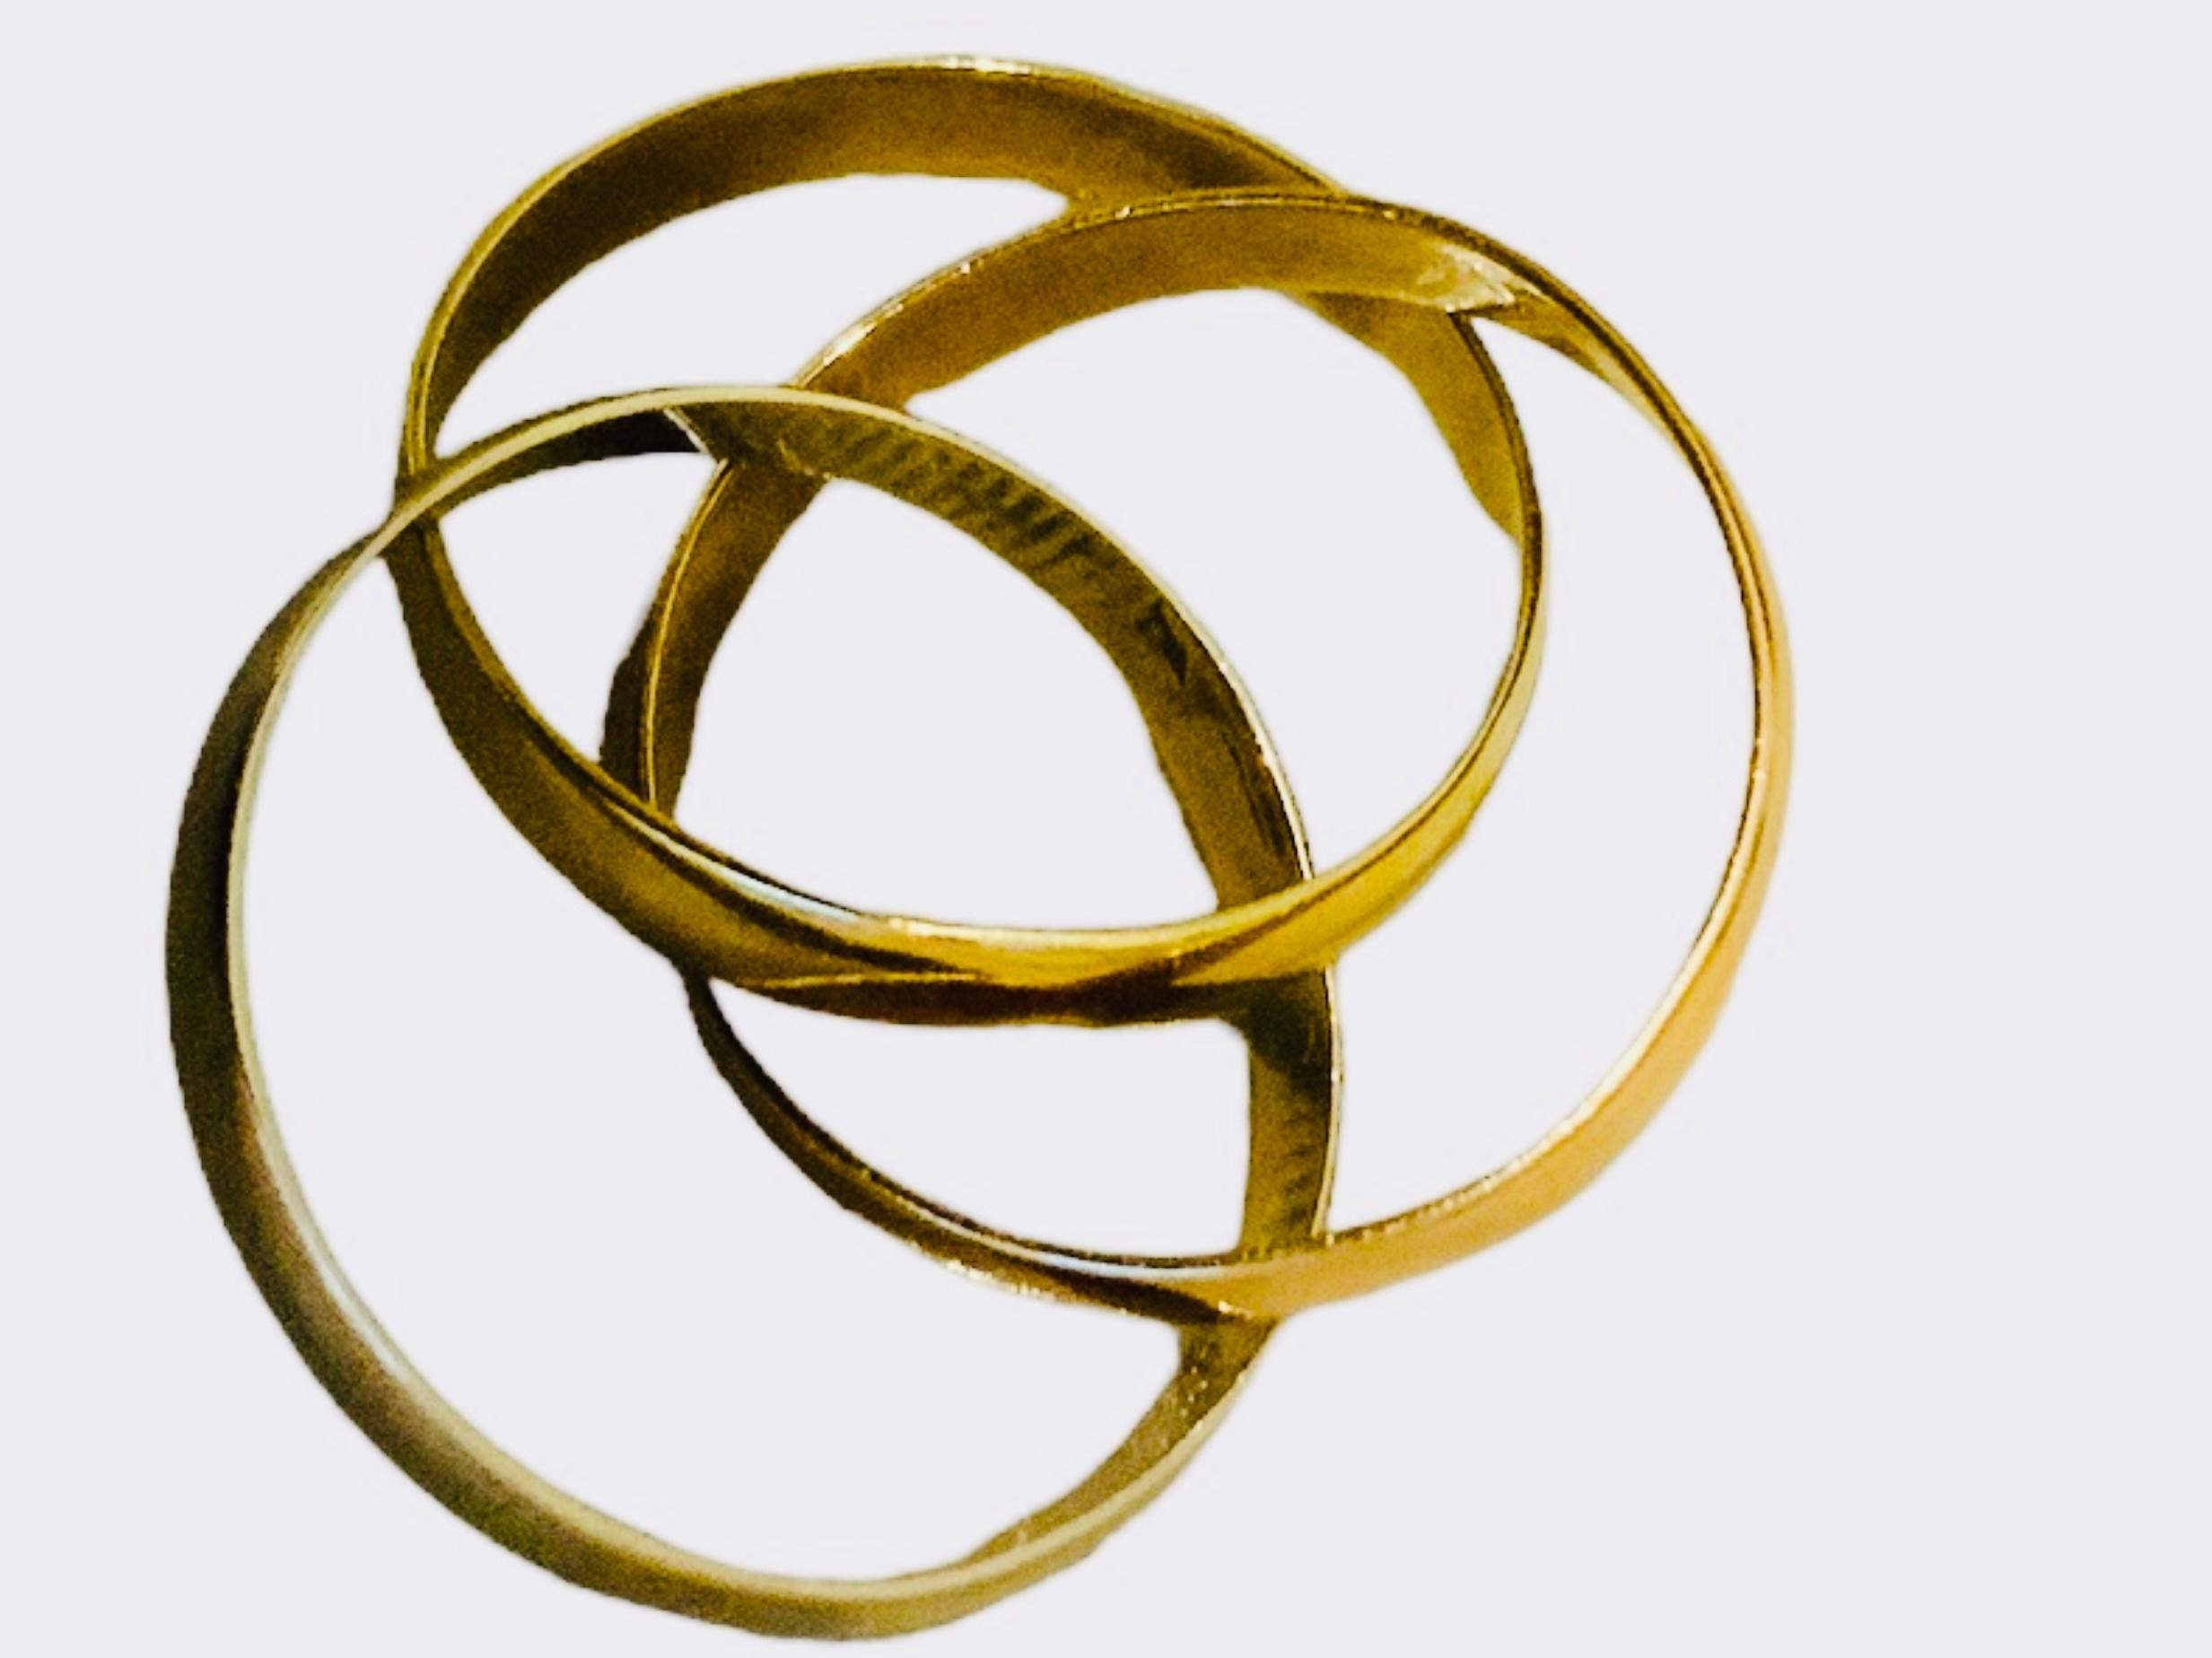 Dies ist ein Satz von drei dünnen Bändern aus 14K Gold. Es zeigt drei runde Bänder in verschiedenen Goldtönen (Gelb-, Weiß- und Roségold), die miteinander verflochten sind. Sie symbolisieren die Heilige Dreifaltigkeit - den Vater, den Sohn und den